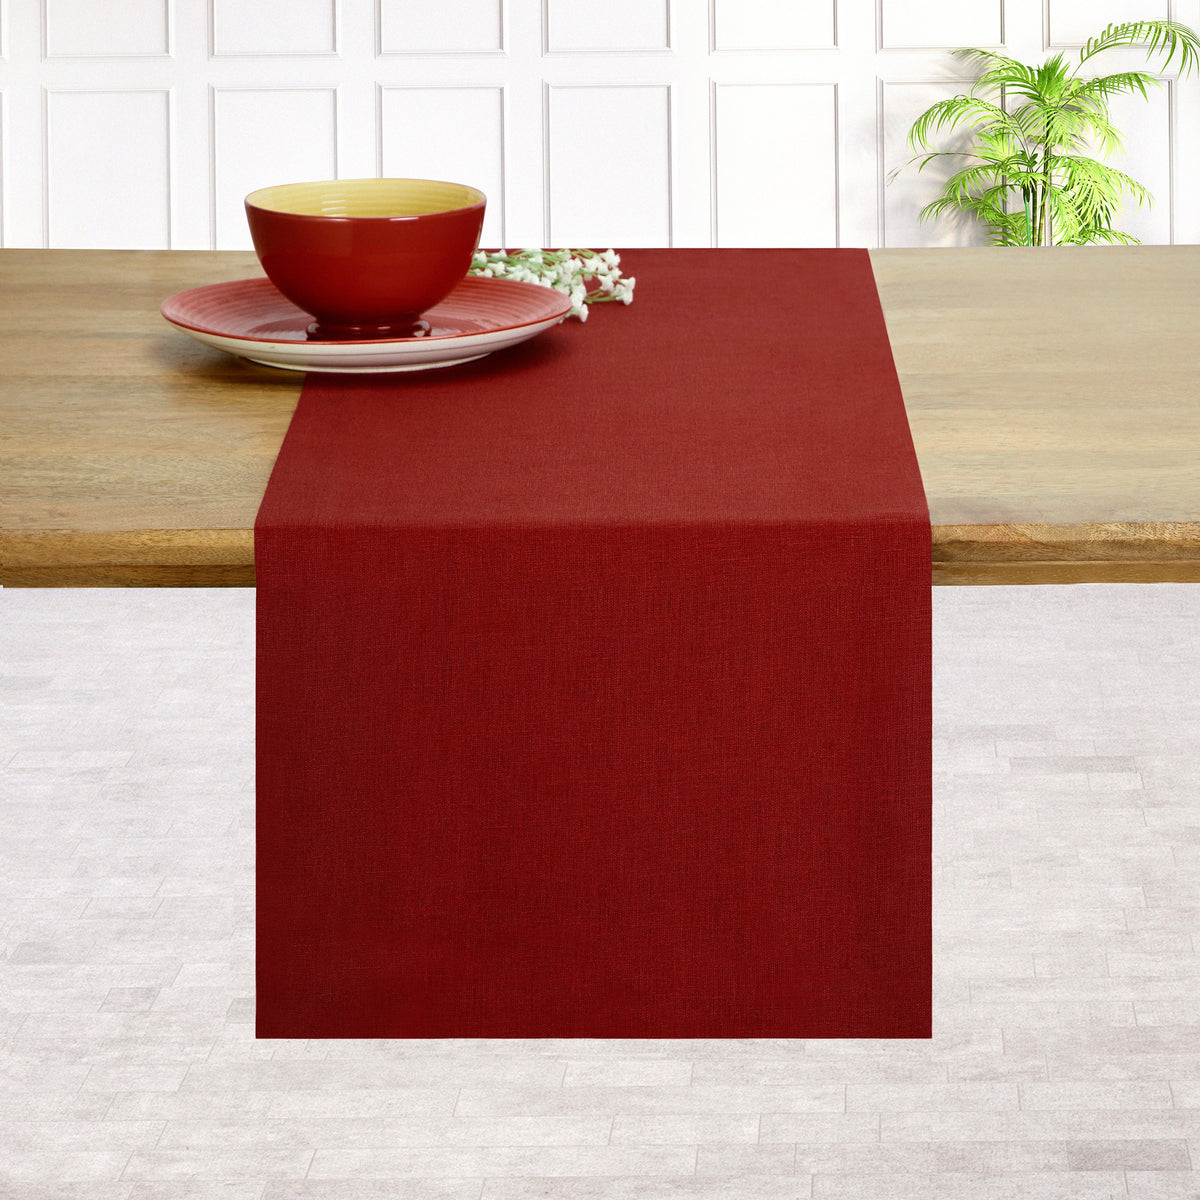 Red Linen Table Runner - Hemmed